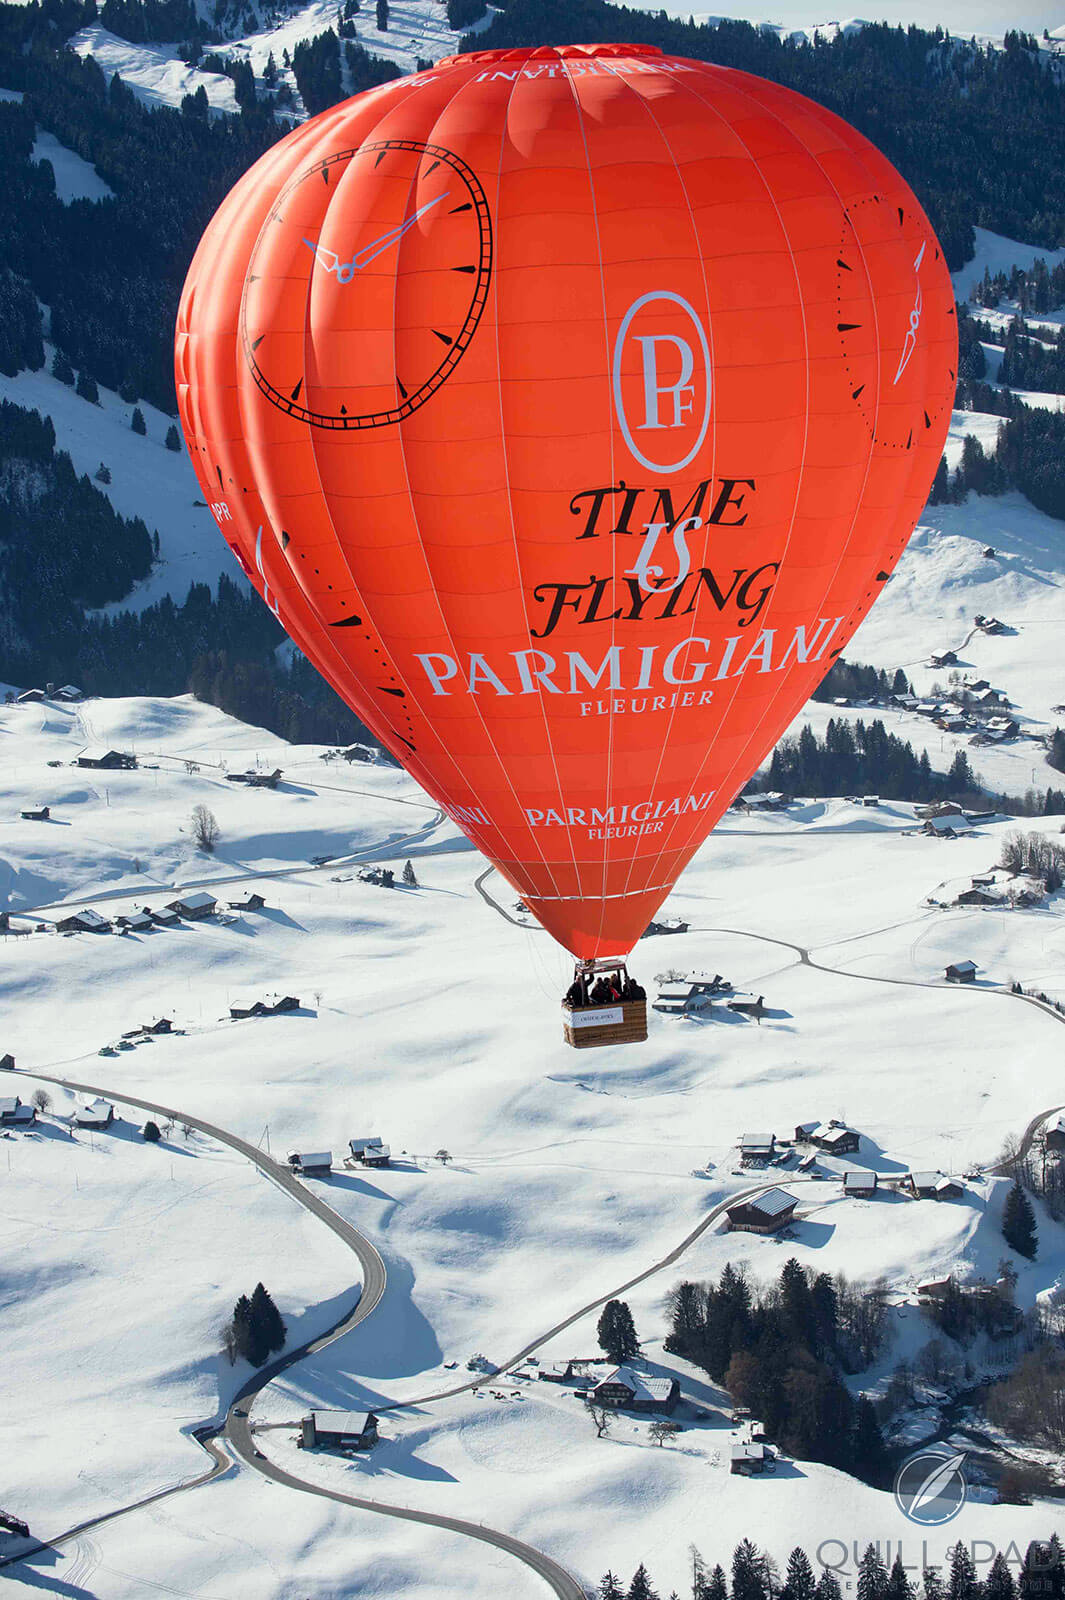 Parmigiani balloon near Gstaad in 2013